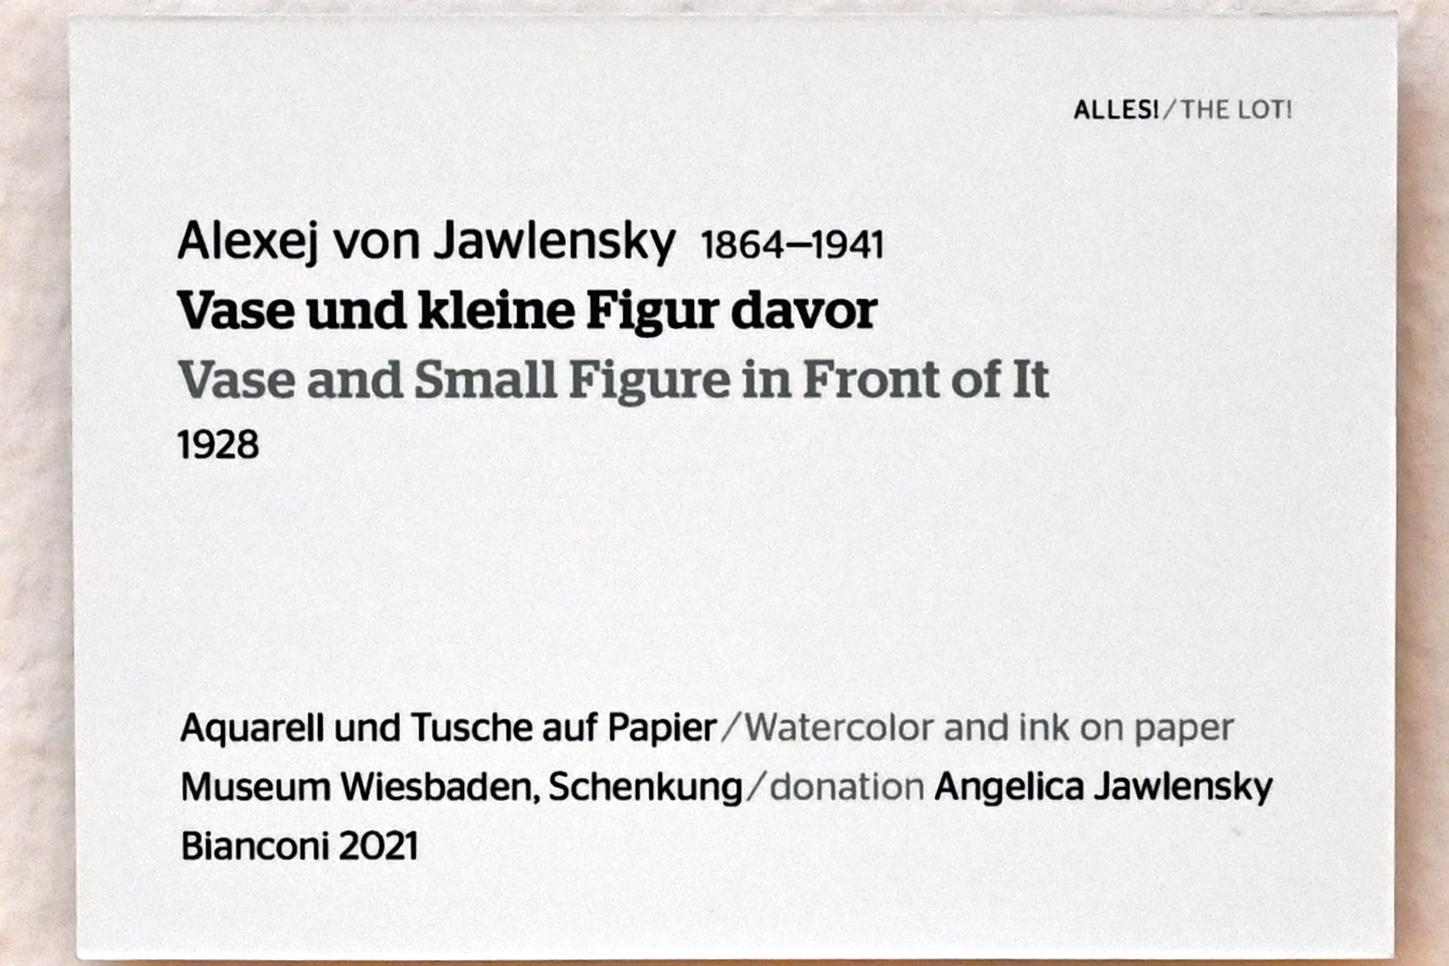 Alexej von Jawlensky (1893–1938), Vase und kleine Figur davor, Wiesbaden, Museum Wiesbaden, Ausstellung "Alles! 100 Jahre Jawlensky in Wiesbaden" vom 17.09.-26.06.2022, Saal 15, 1928, Bild 2/2